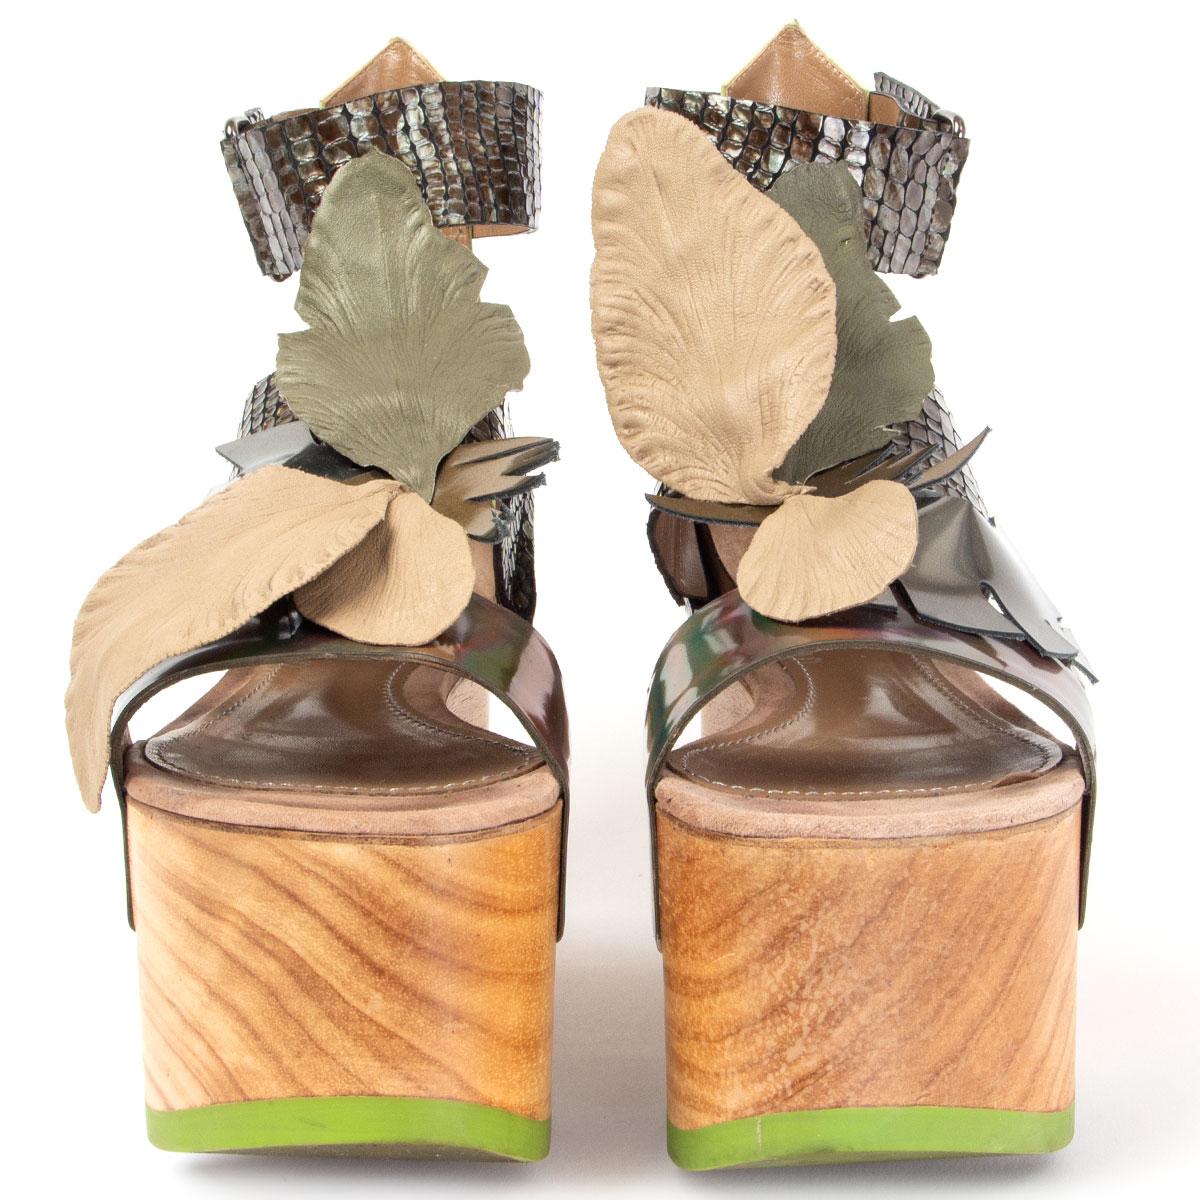 100% authentische John Galliano Plateausandalen aus Holz mit Knöchelriemen in Hellgrün, braunem geprägtem und holografischem braunem Lackleder, verziert mit taupefarbenen und olivgrünen Blättern. Sie wurden getragen und sind in einem ausgezeichneten